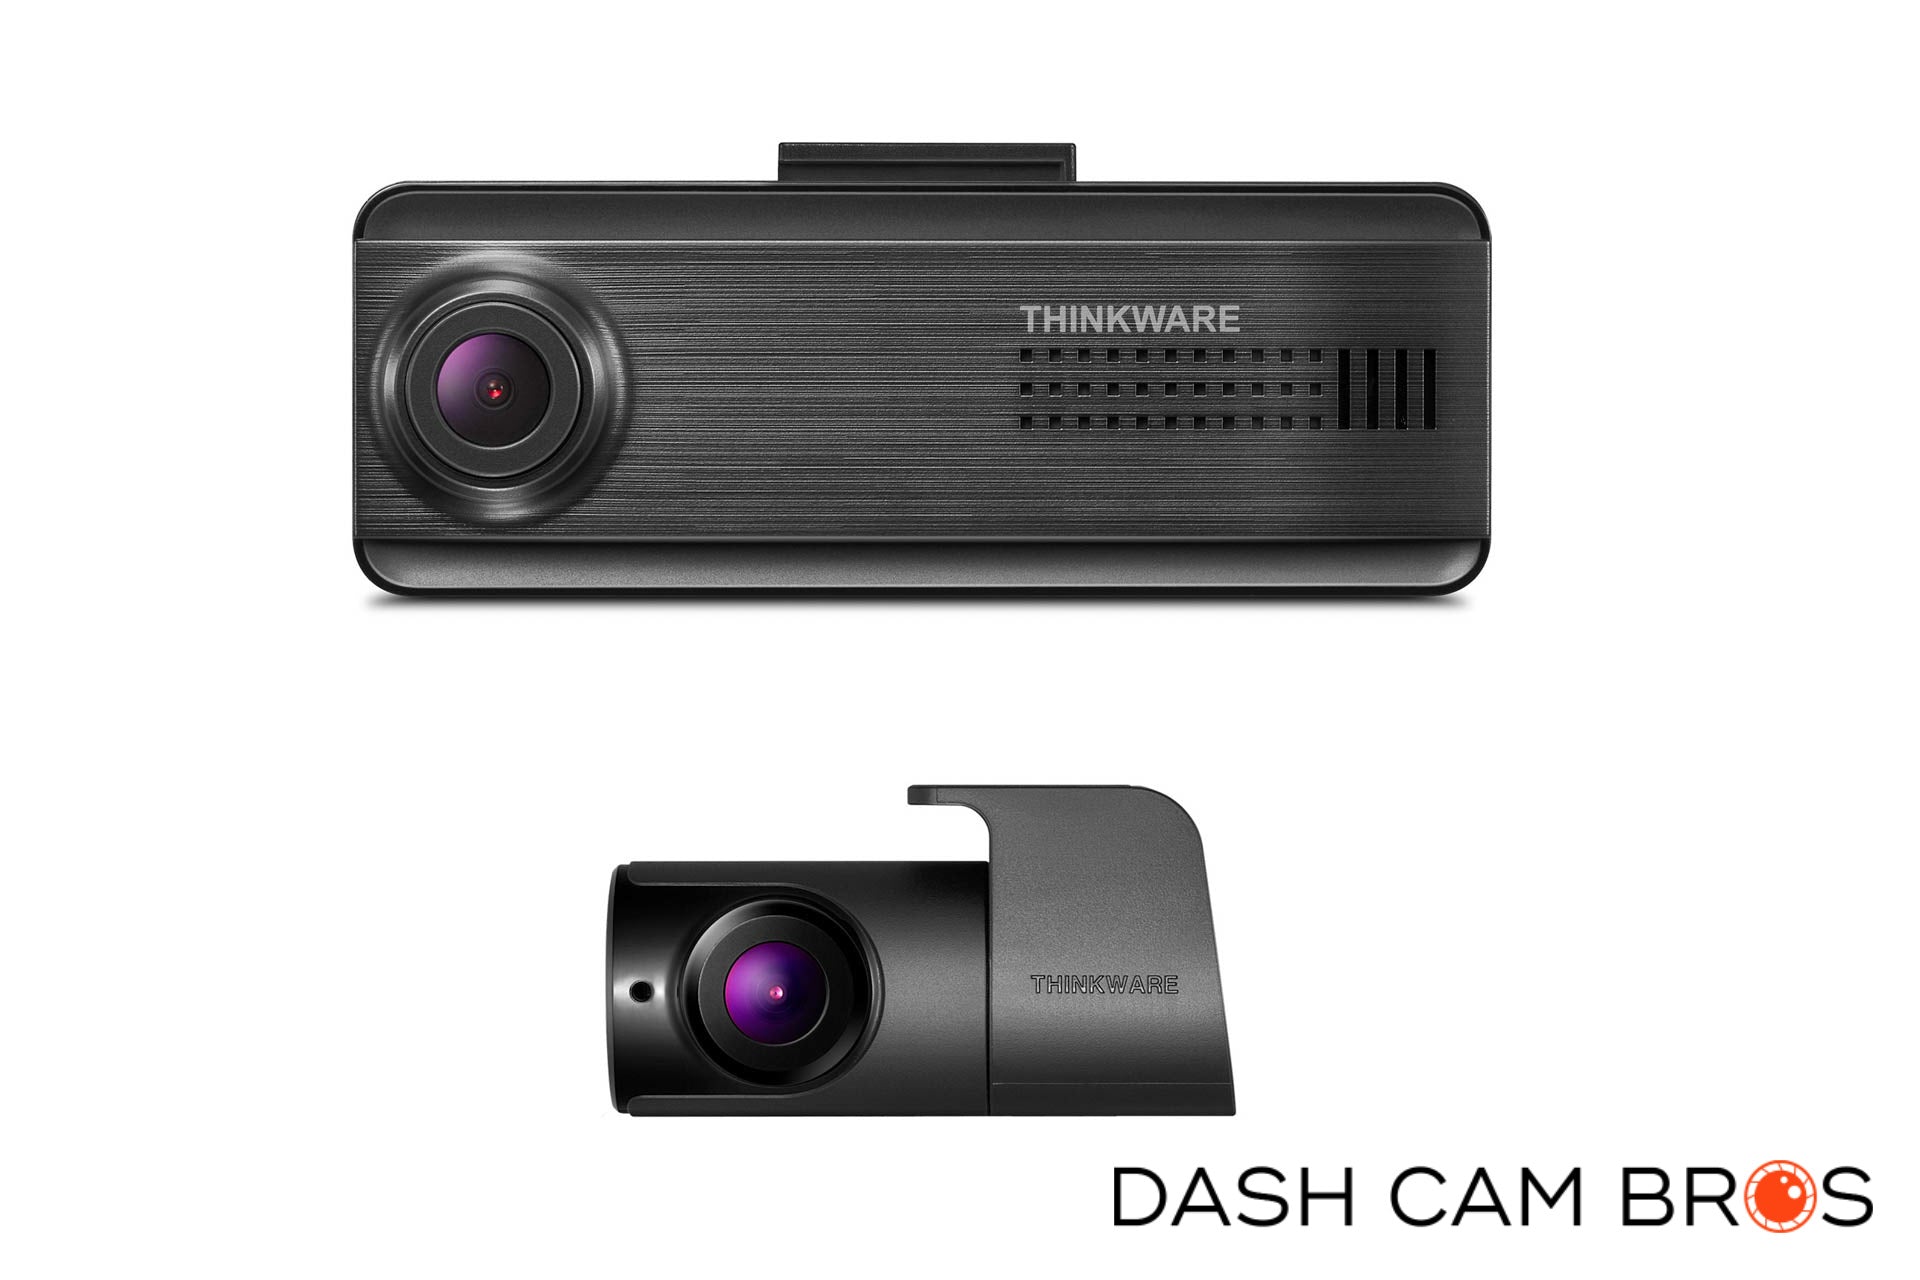 http://dashcambros.com/cdn/shop/products/dashcambros.com-thinkware-f200-pro-dual-lens-dash-cam-10.jpg?v=1624030088